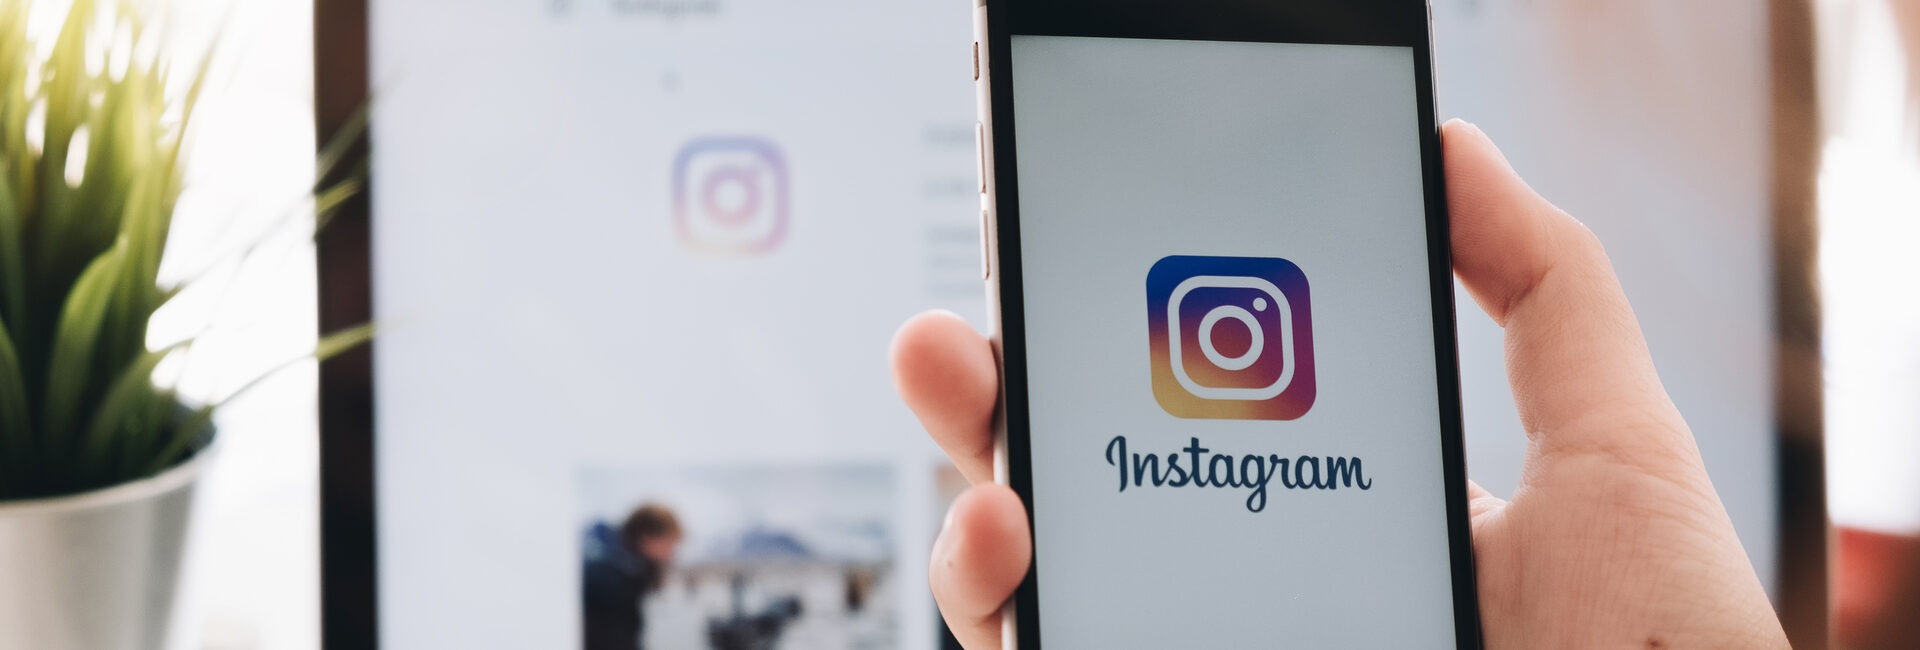 Instagram-Anwendung auf Ihrem Smartphone aktiviert